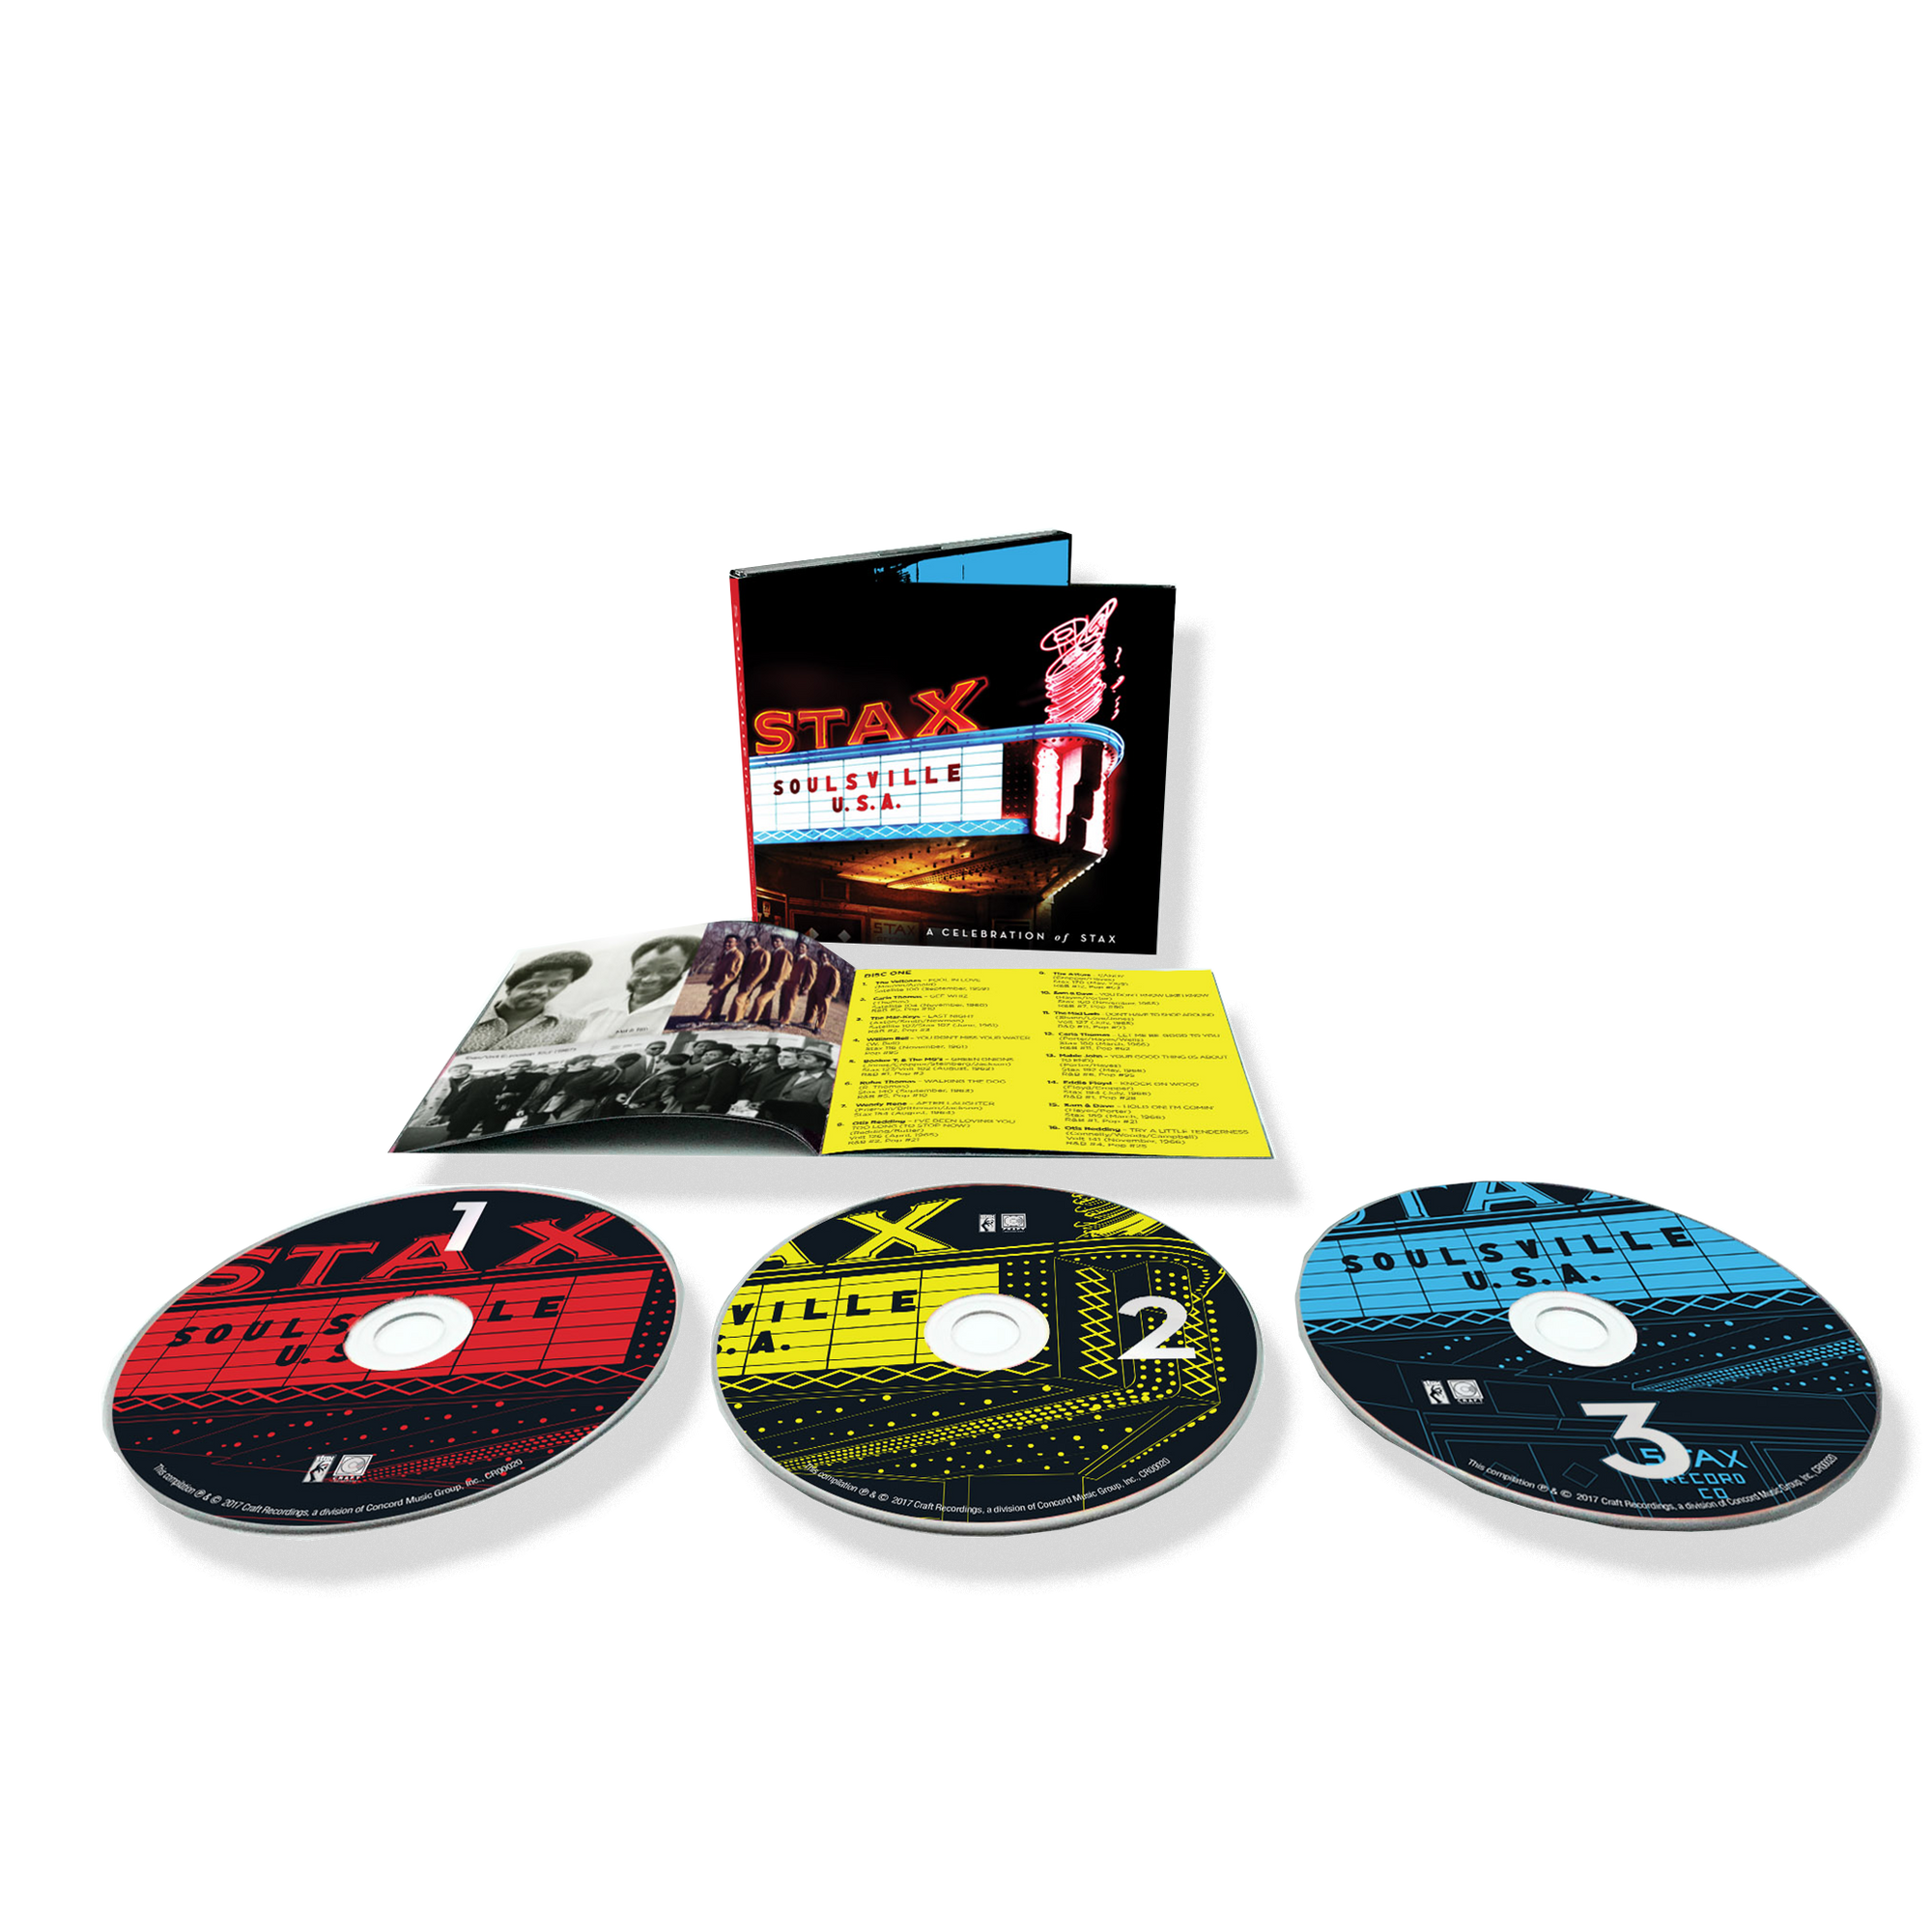 Soulsville U.S.A.: A Celebration of Stax (3-CD Set)